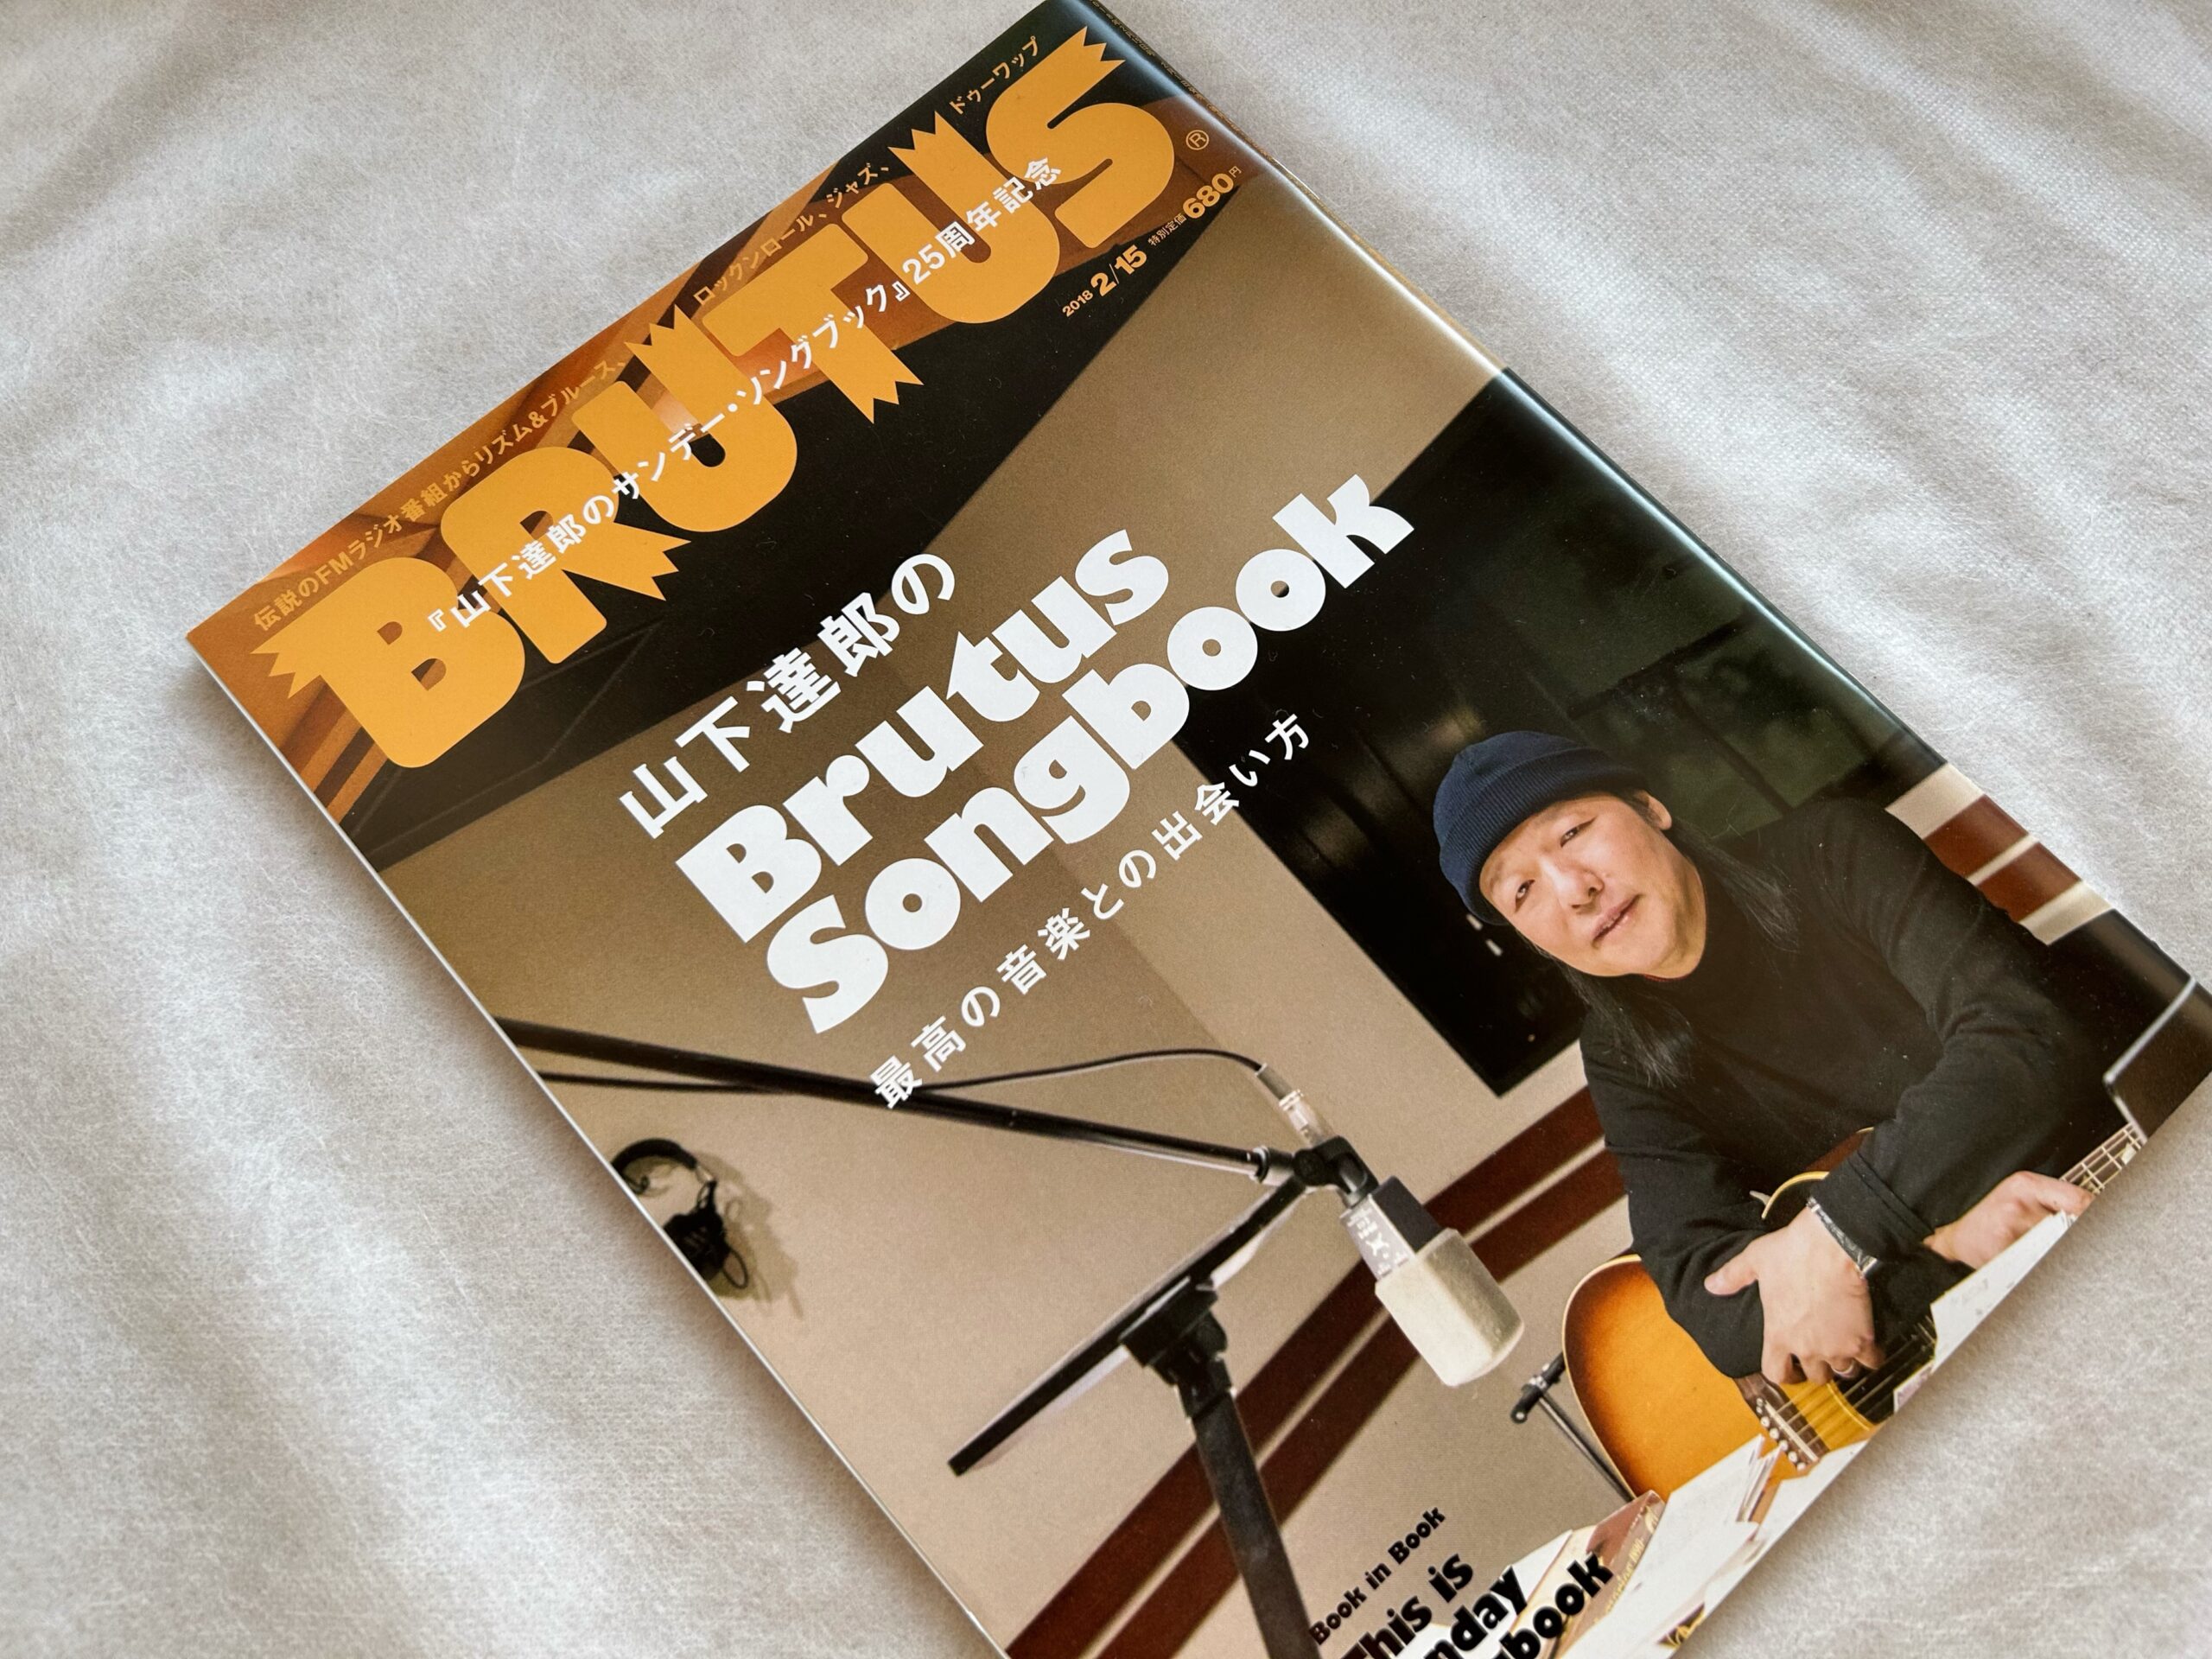 『ブルータス』の「山下達郎のBrutus Songbook」2018年版。